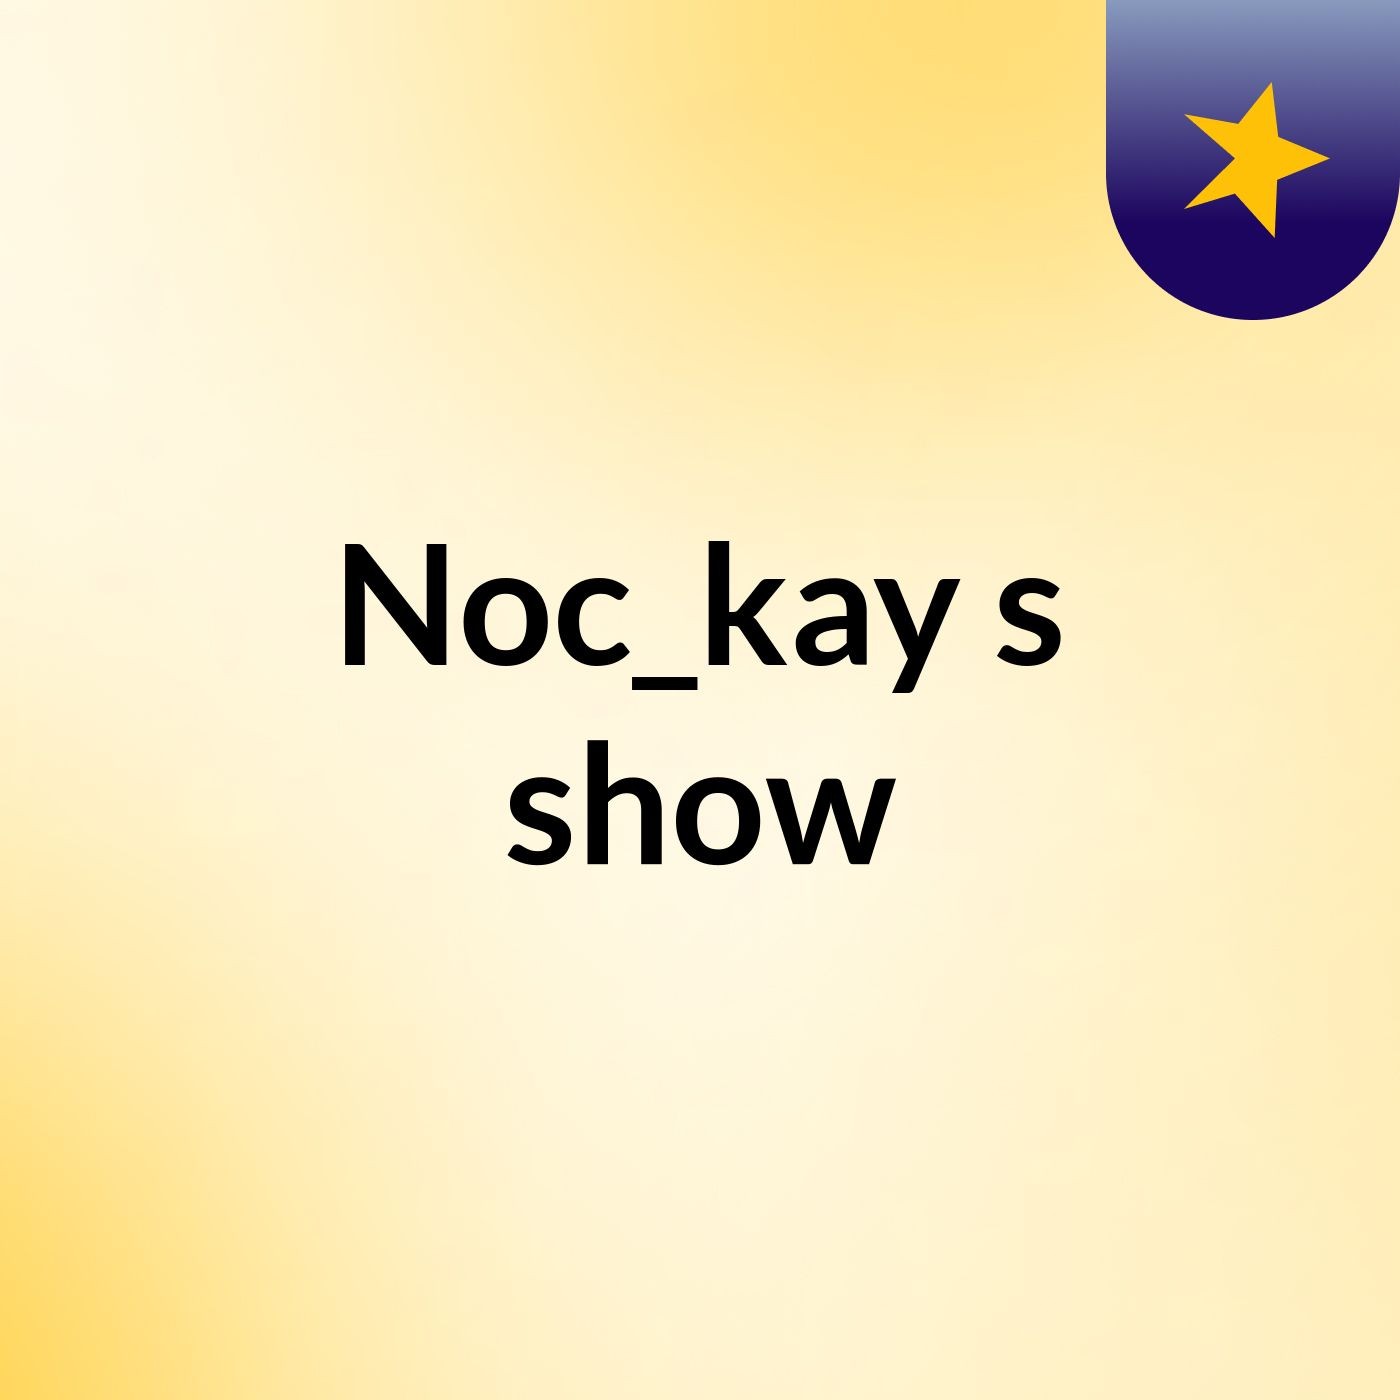 Noc_kay's show